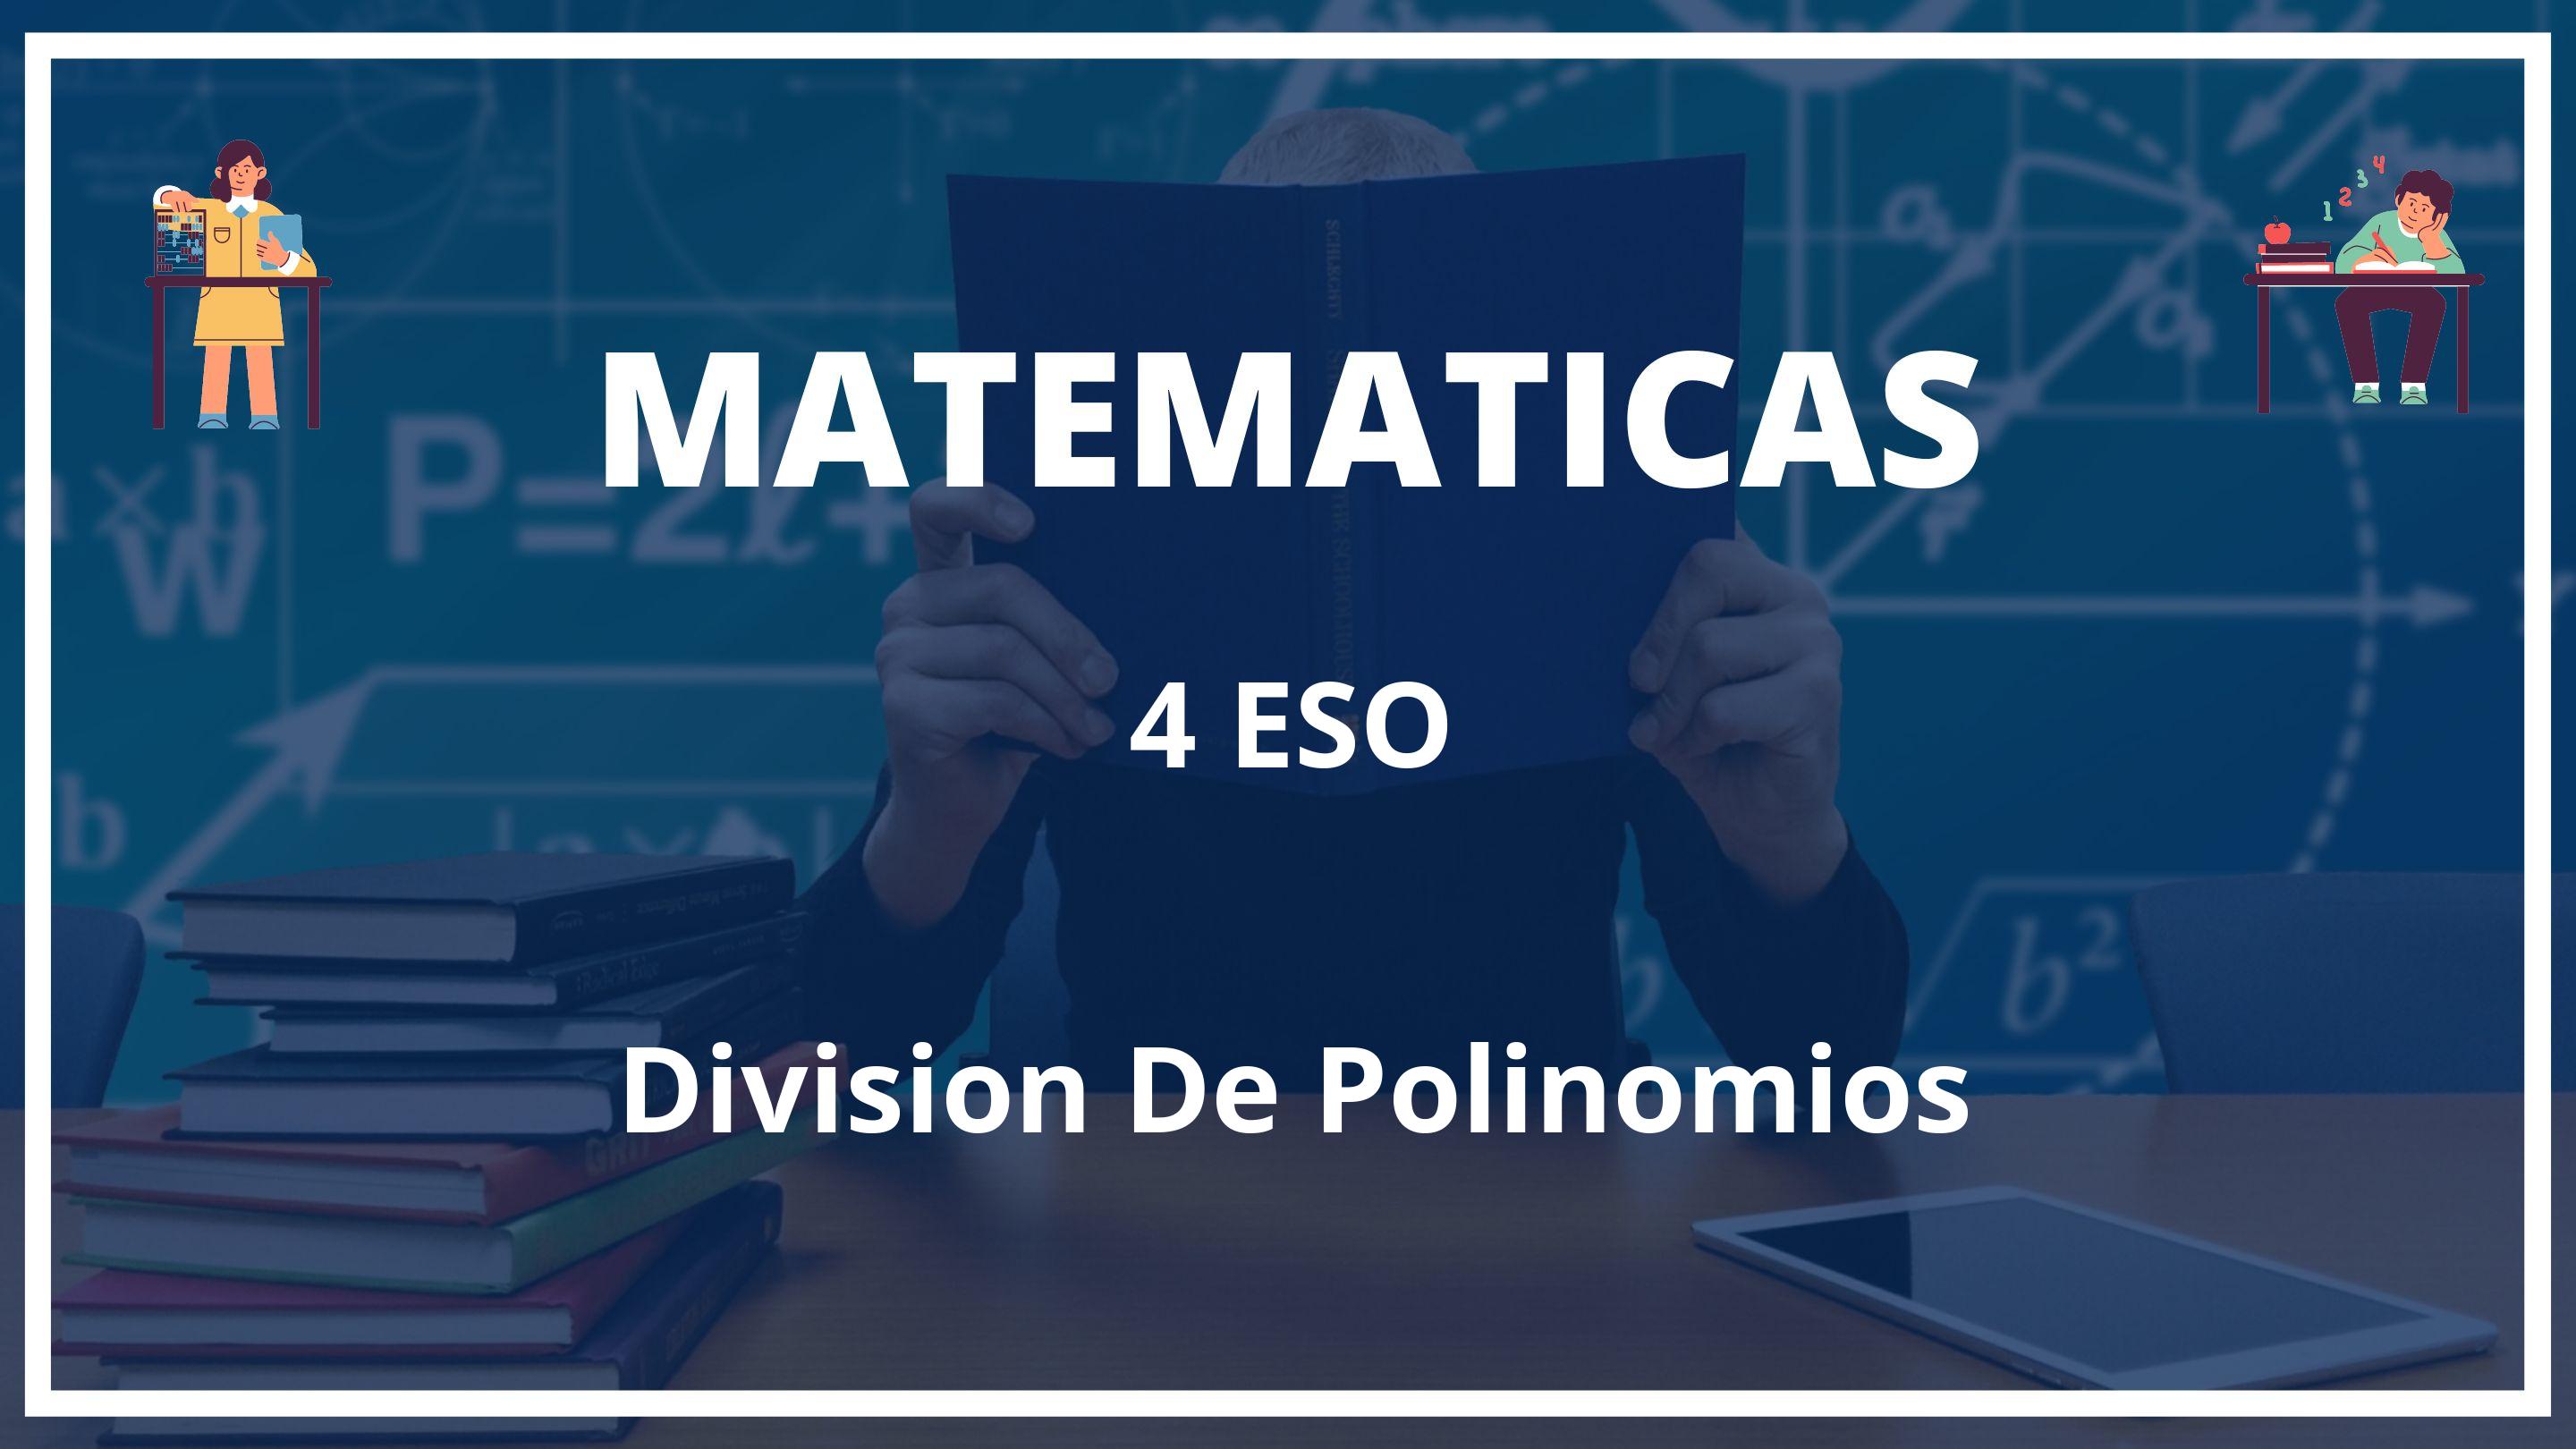 Division De Polinomios 4 ESO